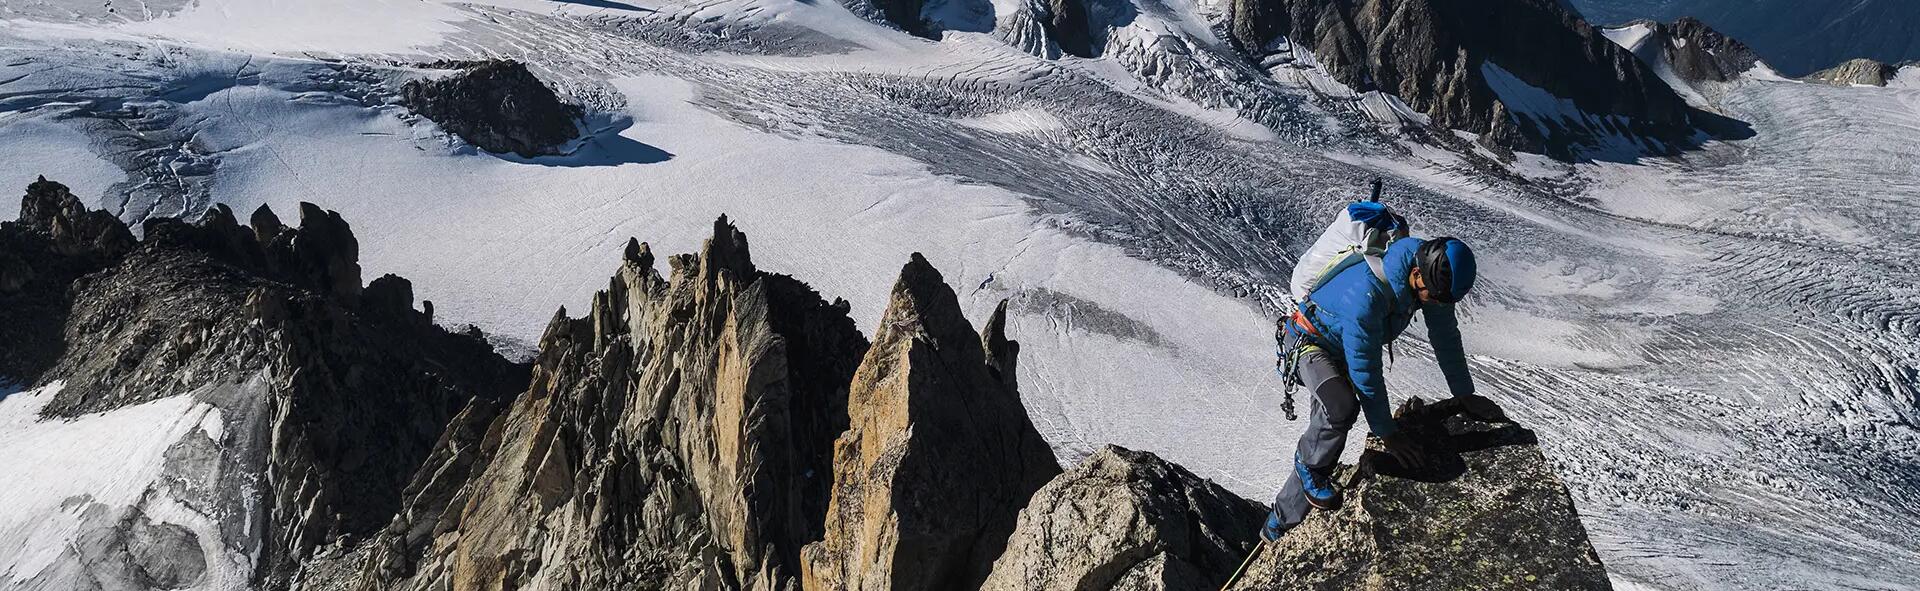 mężczyzna w stroju alpinistycznym wspinający się po górach zimą